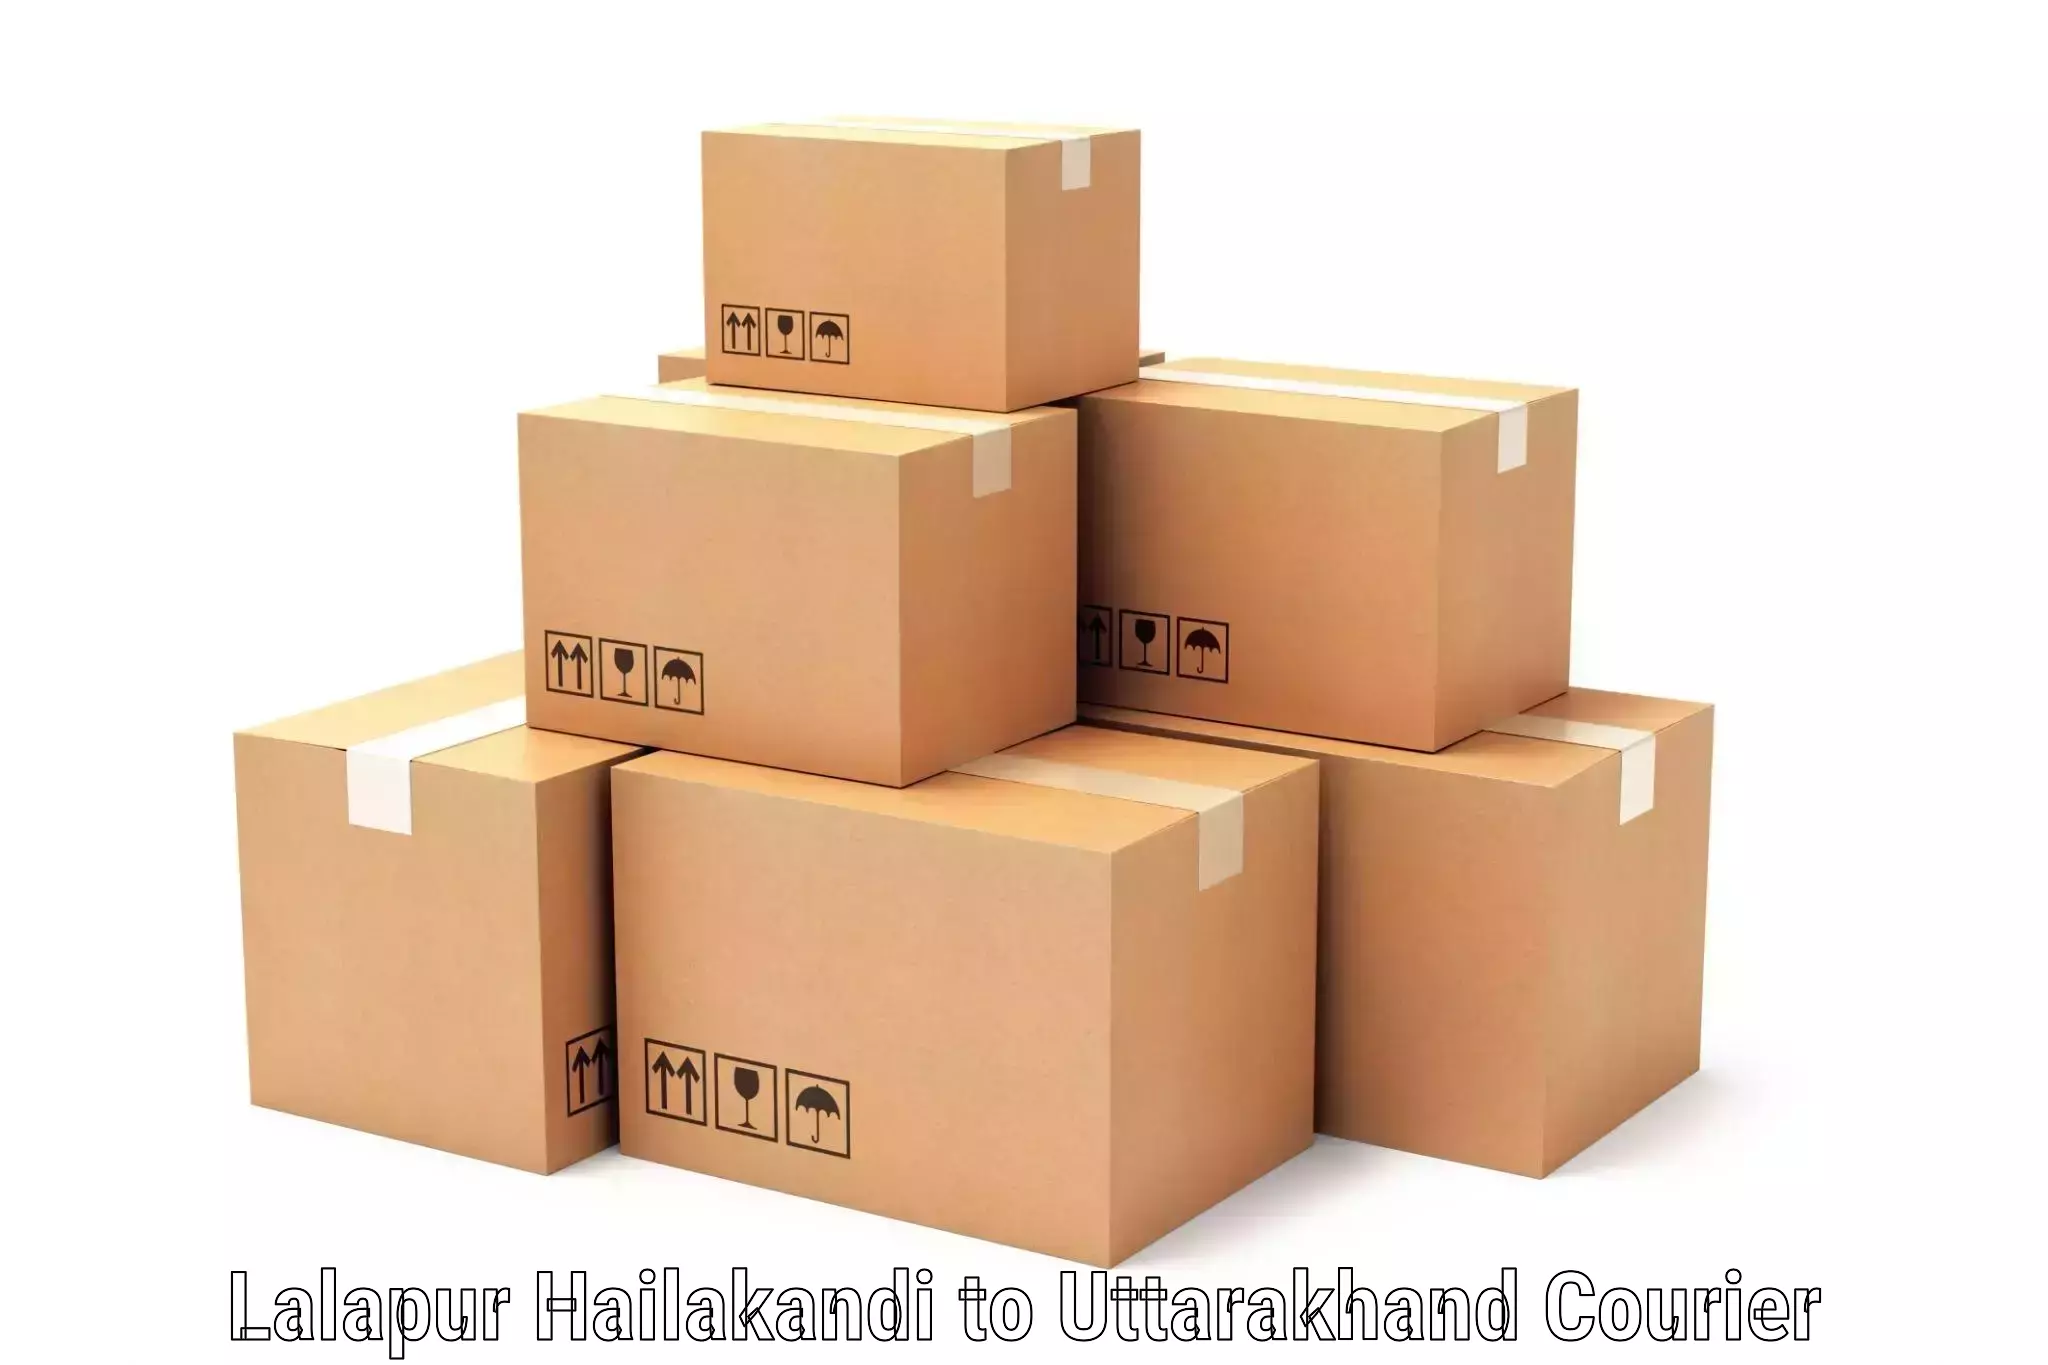 Nationwide shipping coverage Lalapur Hailakandi to Uttarkashi